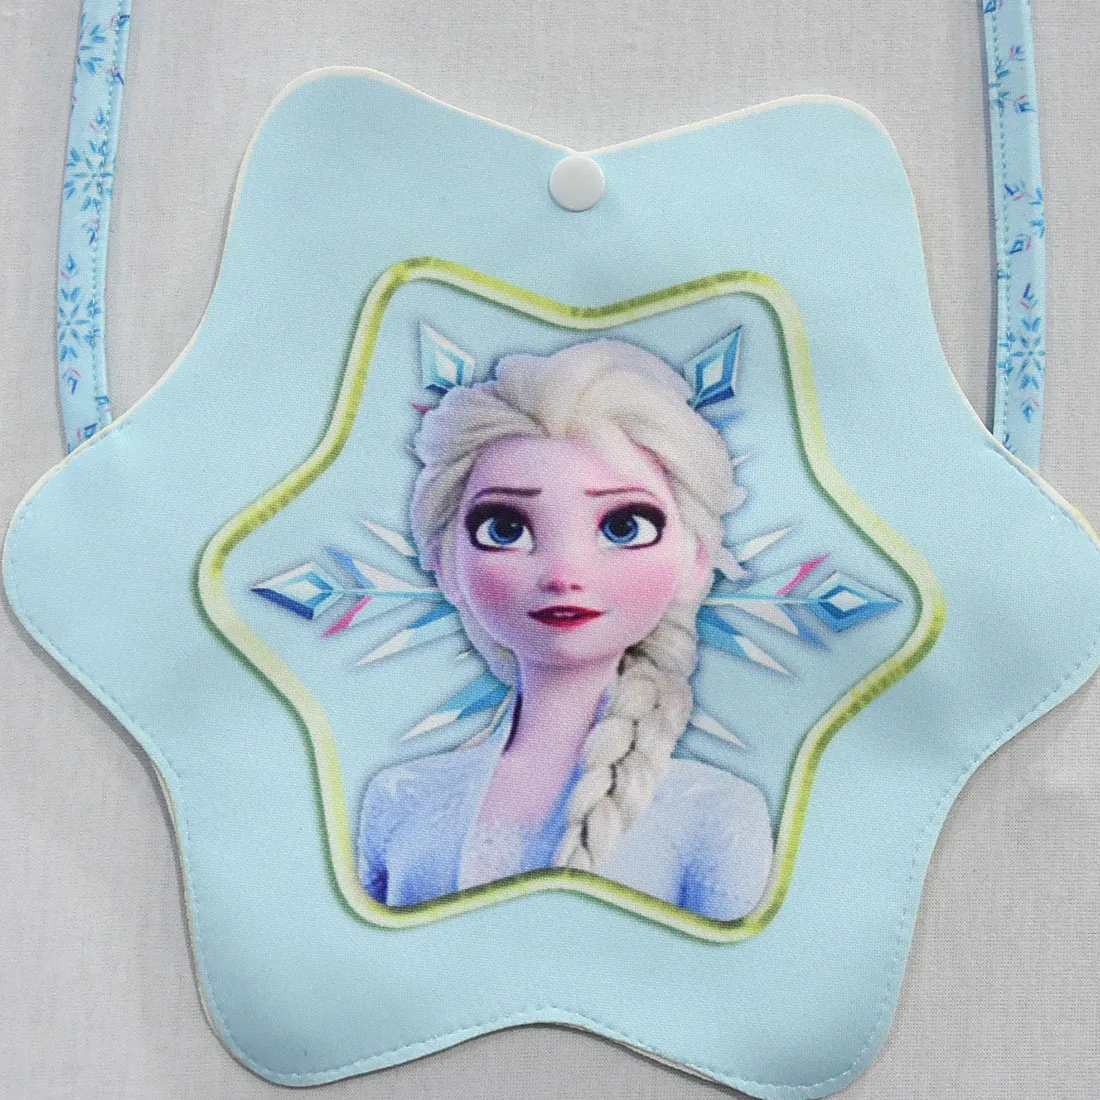 Disney Frozen2 New Cartoon Bag Anna Elsa Olaf Snowflower Anime Figure Children's Small Shoulder Bag Girl's Favorite Gift Toys images - 6